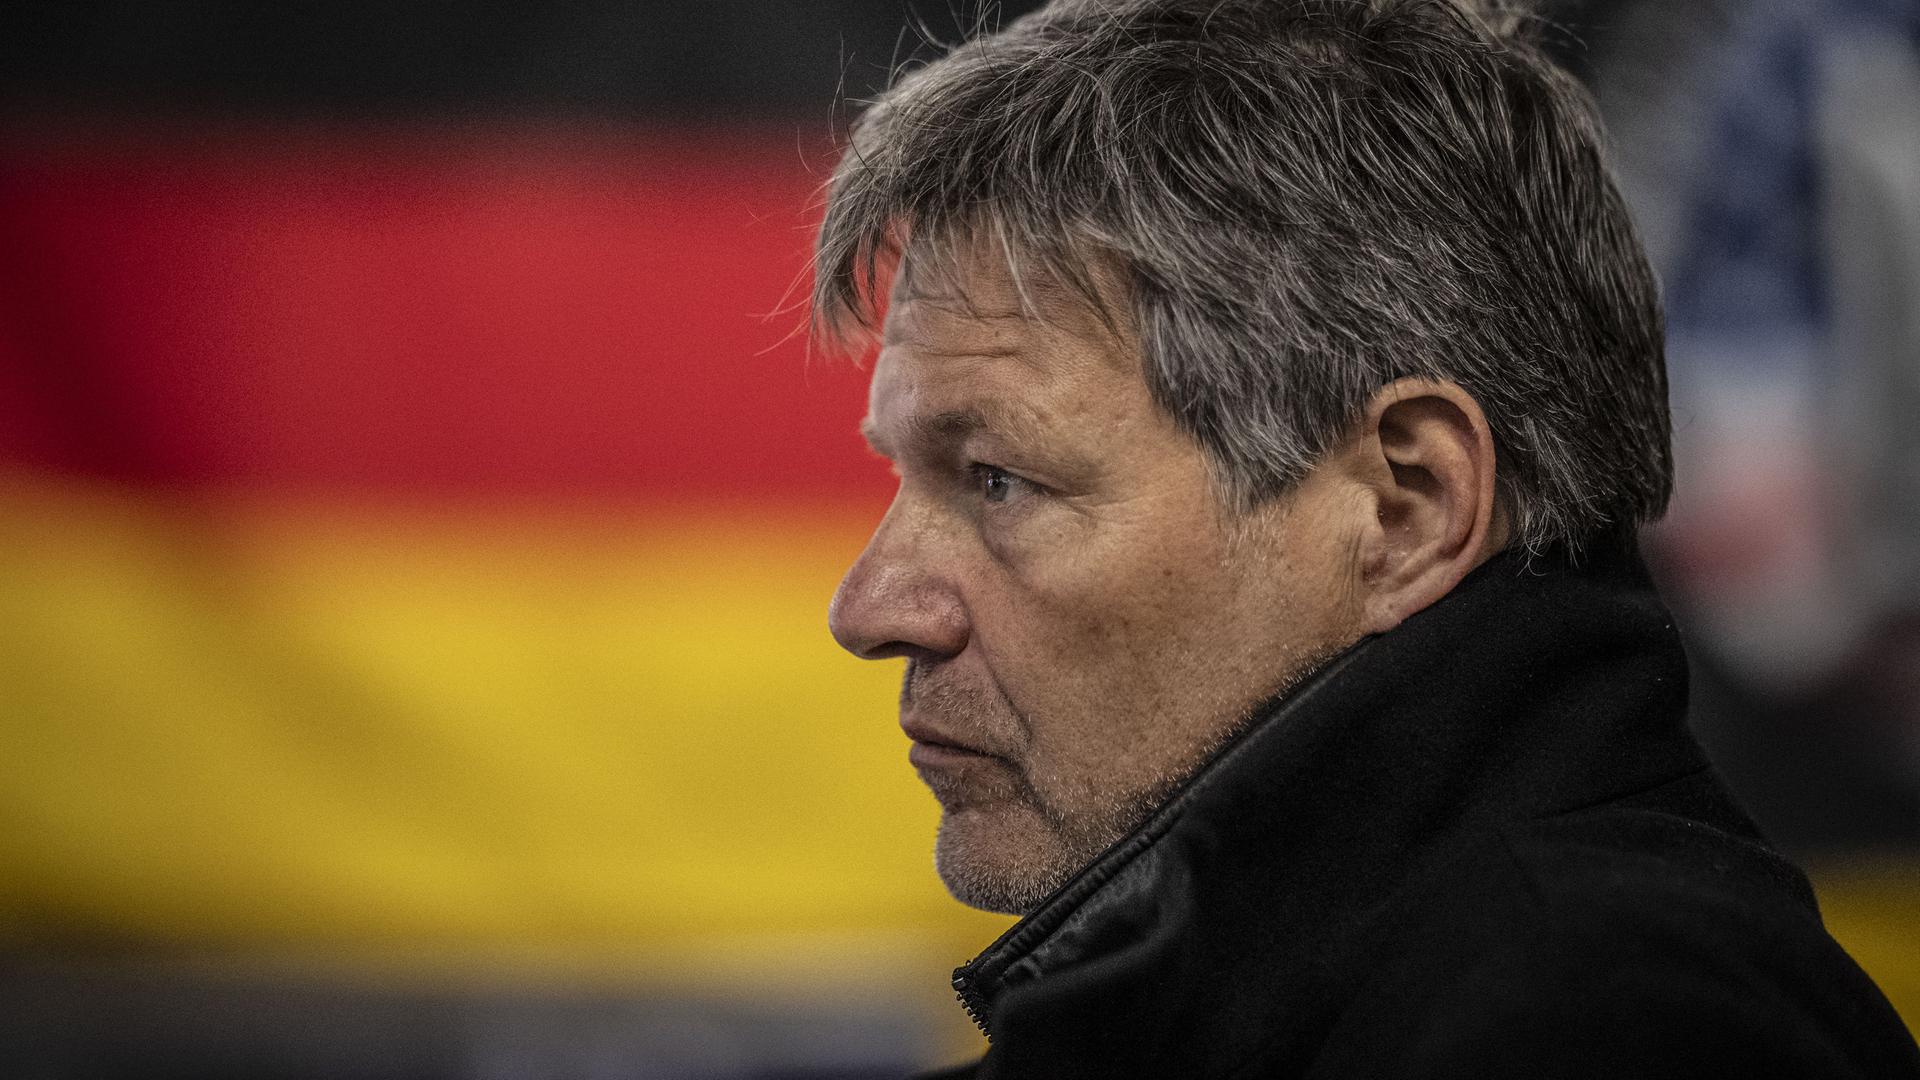 Robert Habeck im Profil, im Hintergrund ist die deutsche Flagge zu sehen.